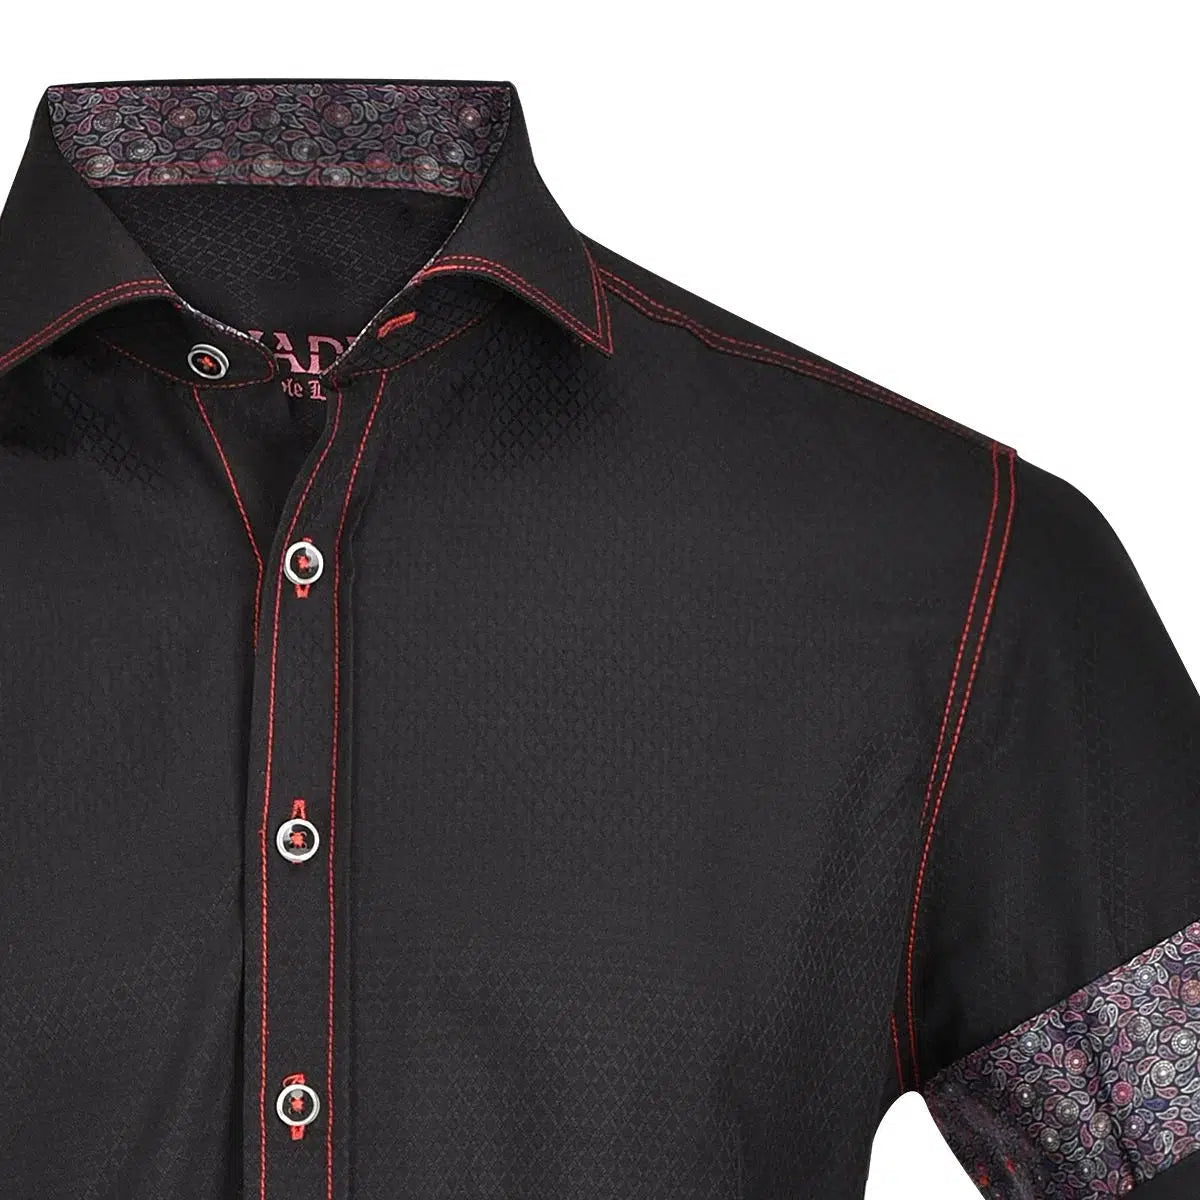 CM59572 - Cuadra black casual fashion shirt for men-Kuet.us